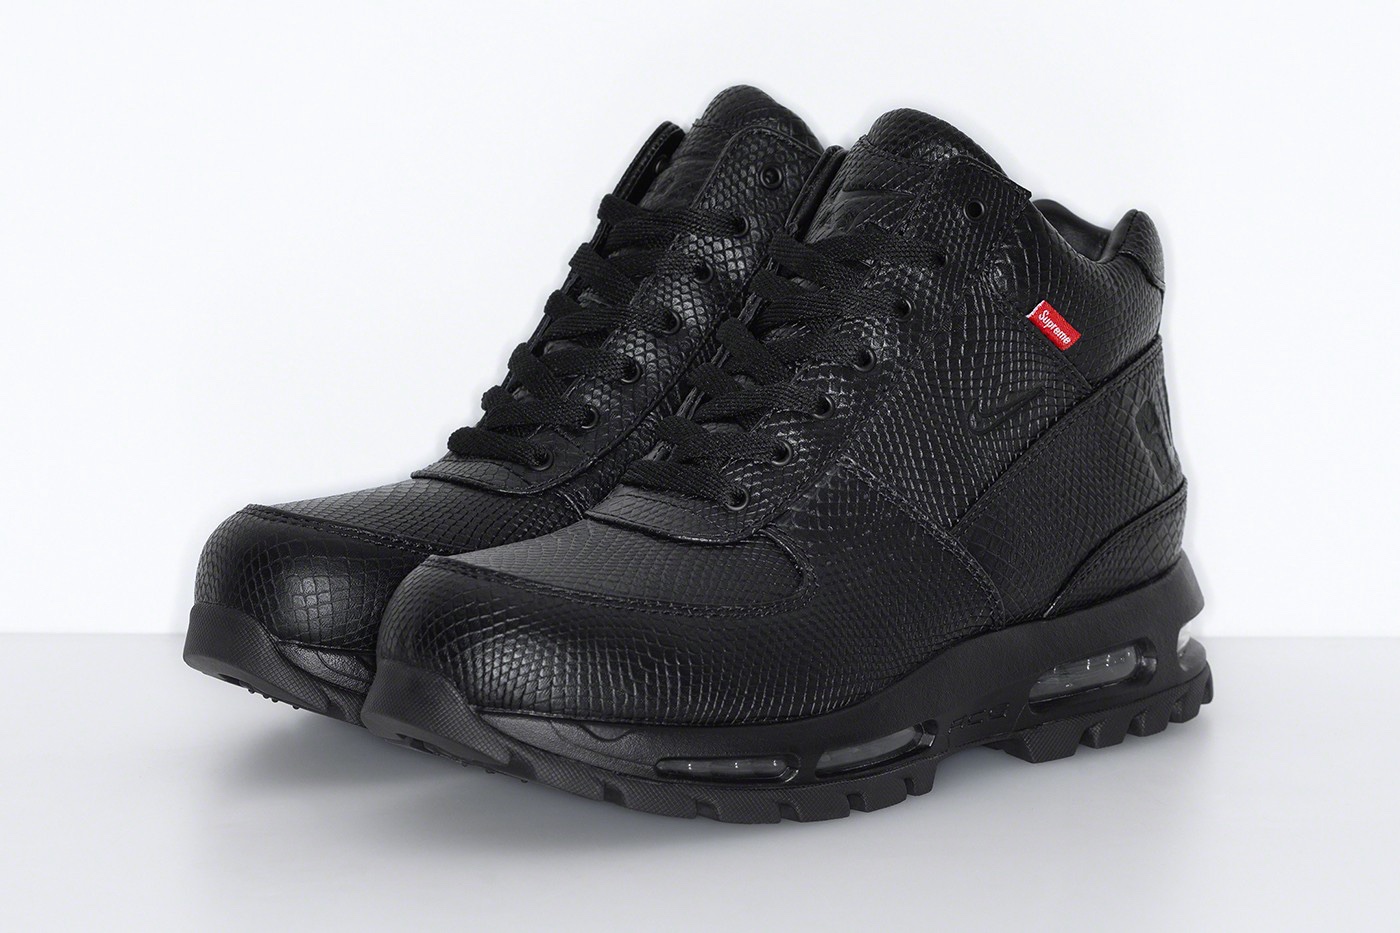 Supreme x Nike Air Max Goadome Boots black